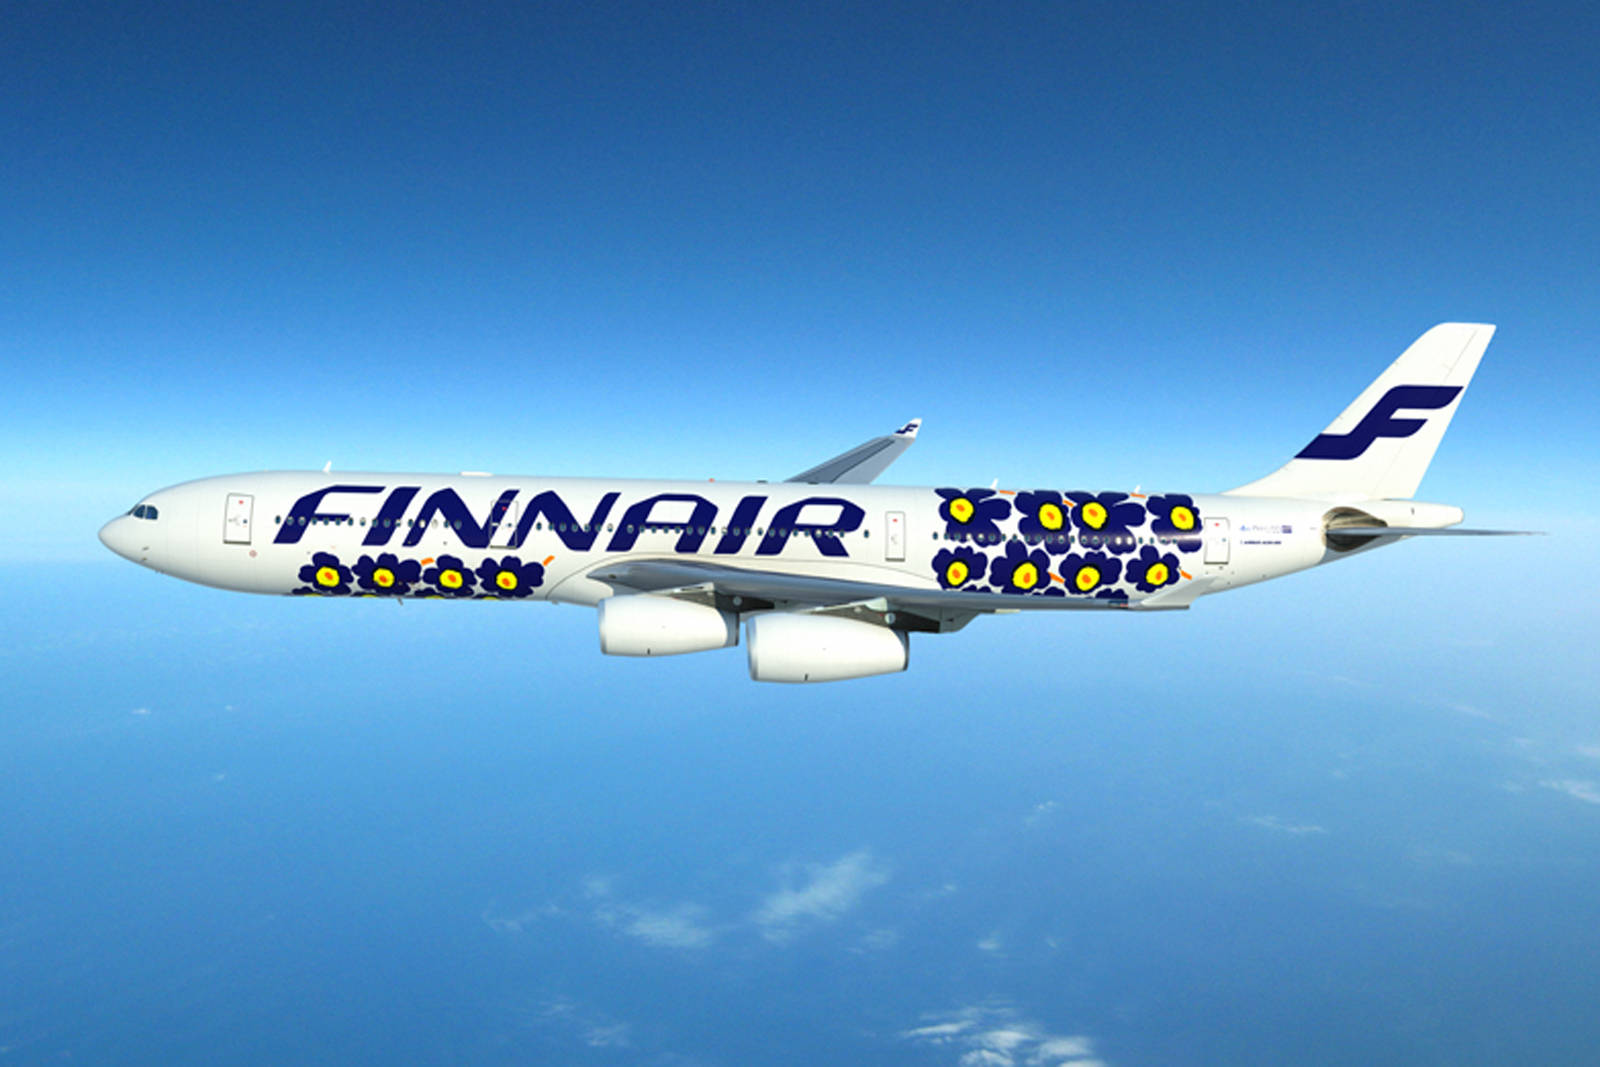 Finnairf Logo In Italian Would Be 